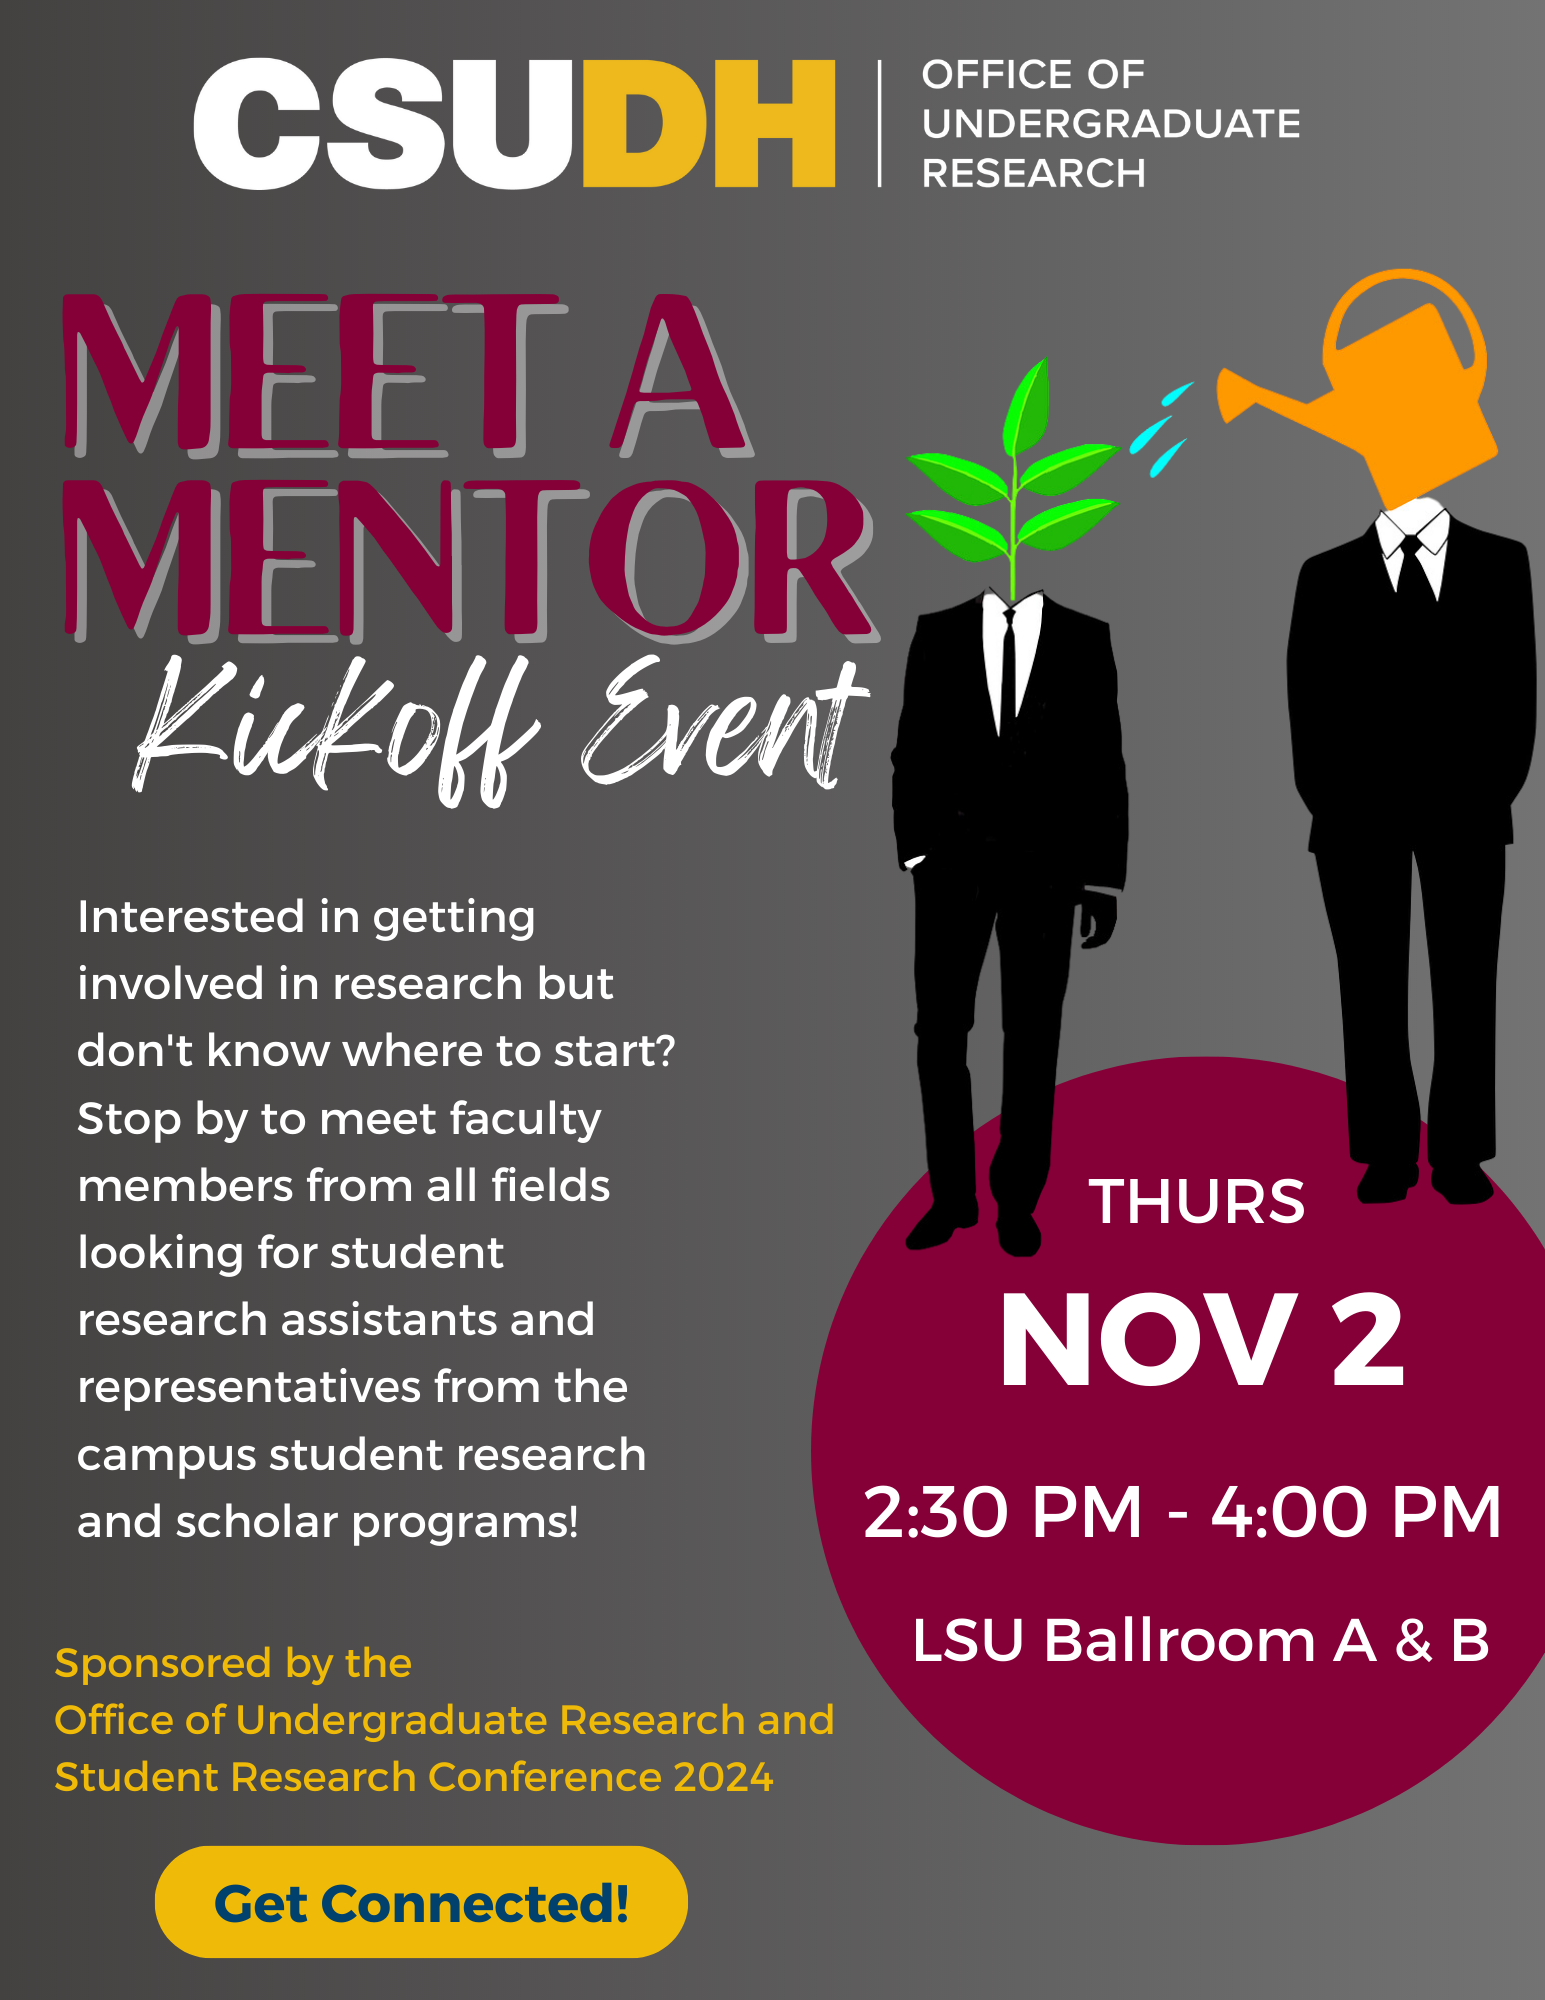 Meet-A-Mentor-Kickoff-Event-11-2-23